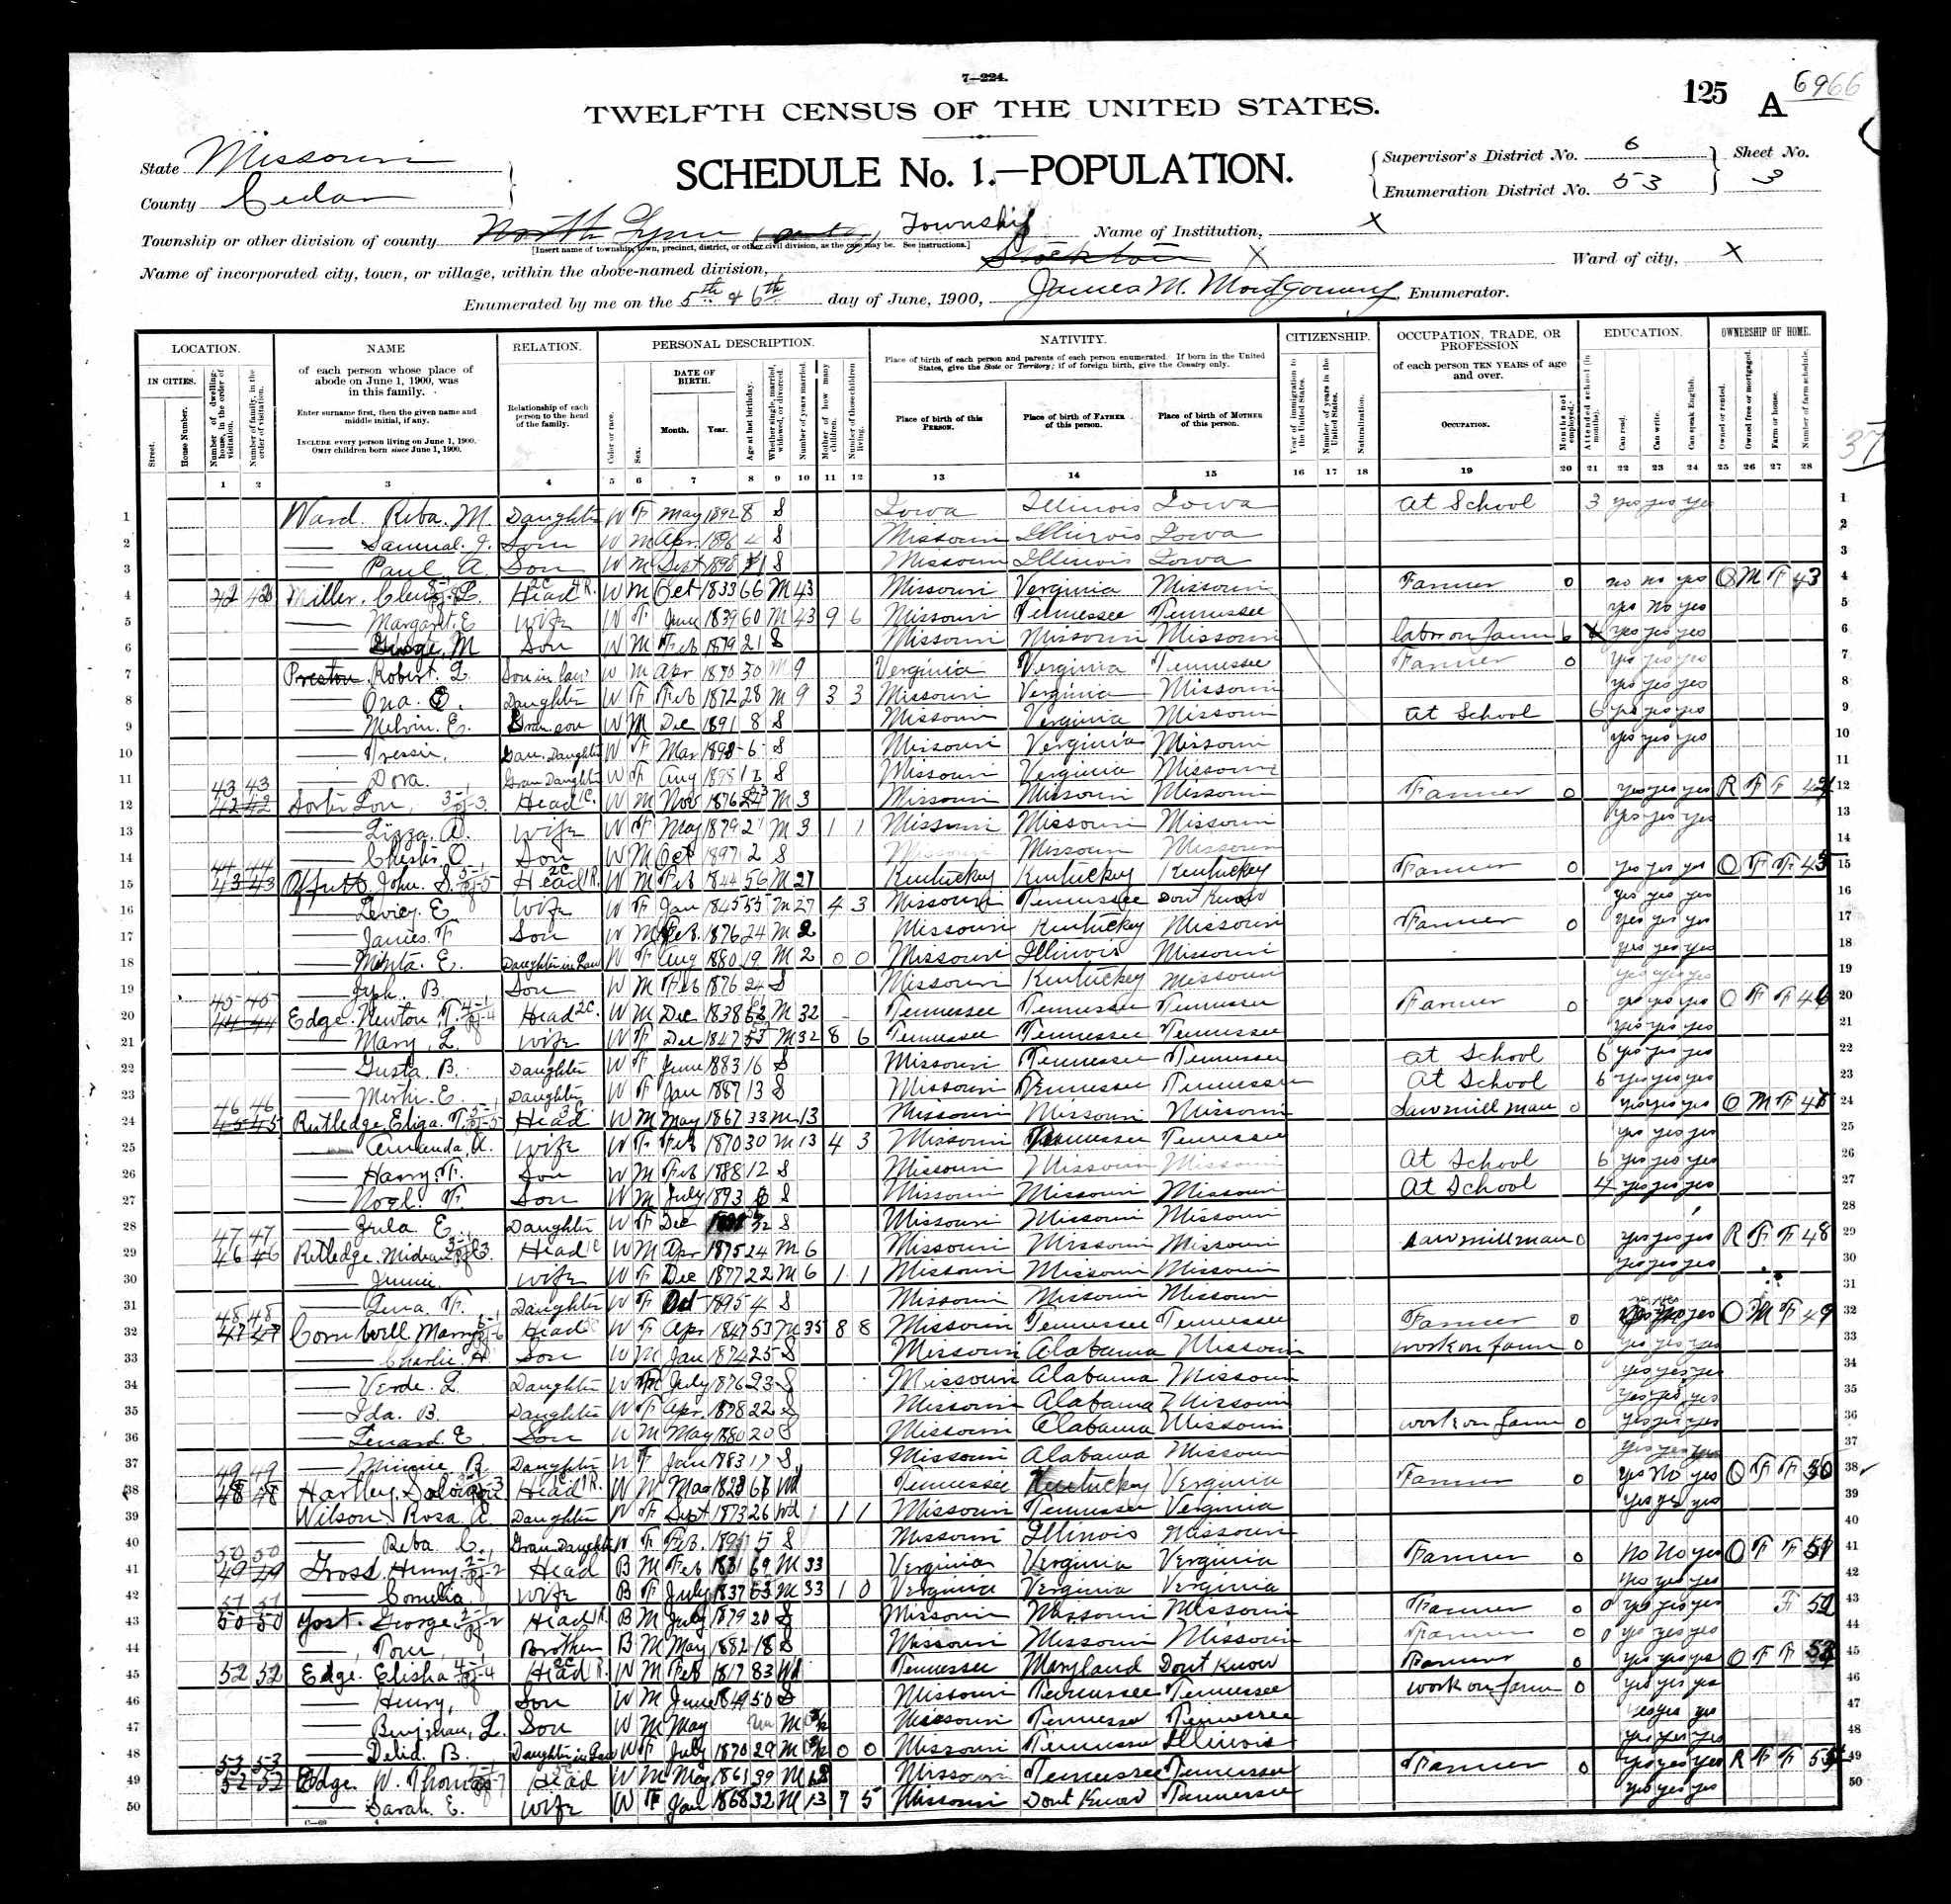 Solomon Hartley, 1900 Cedar County, Missouri, census